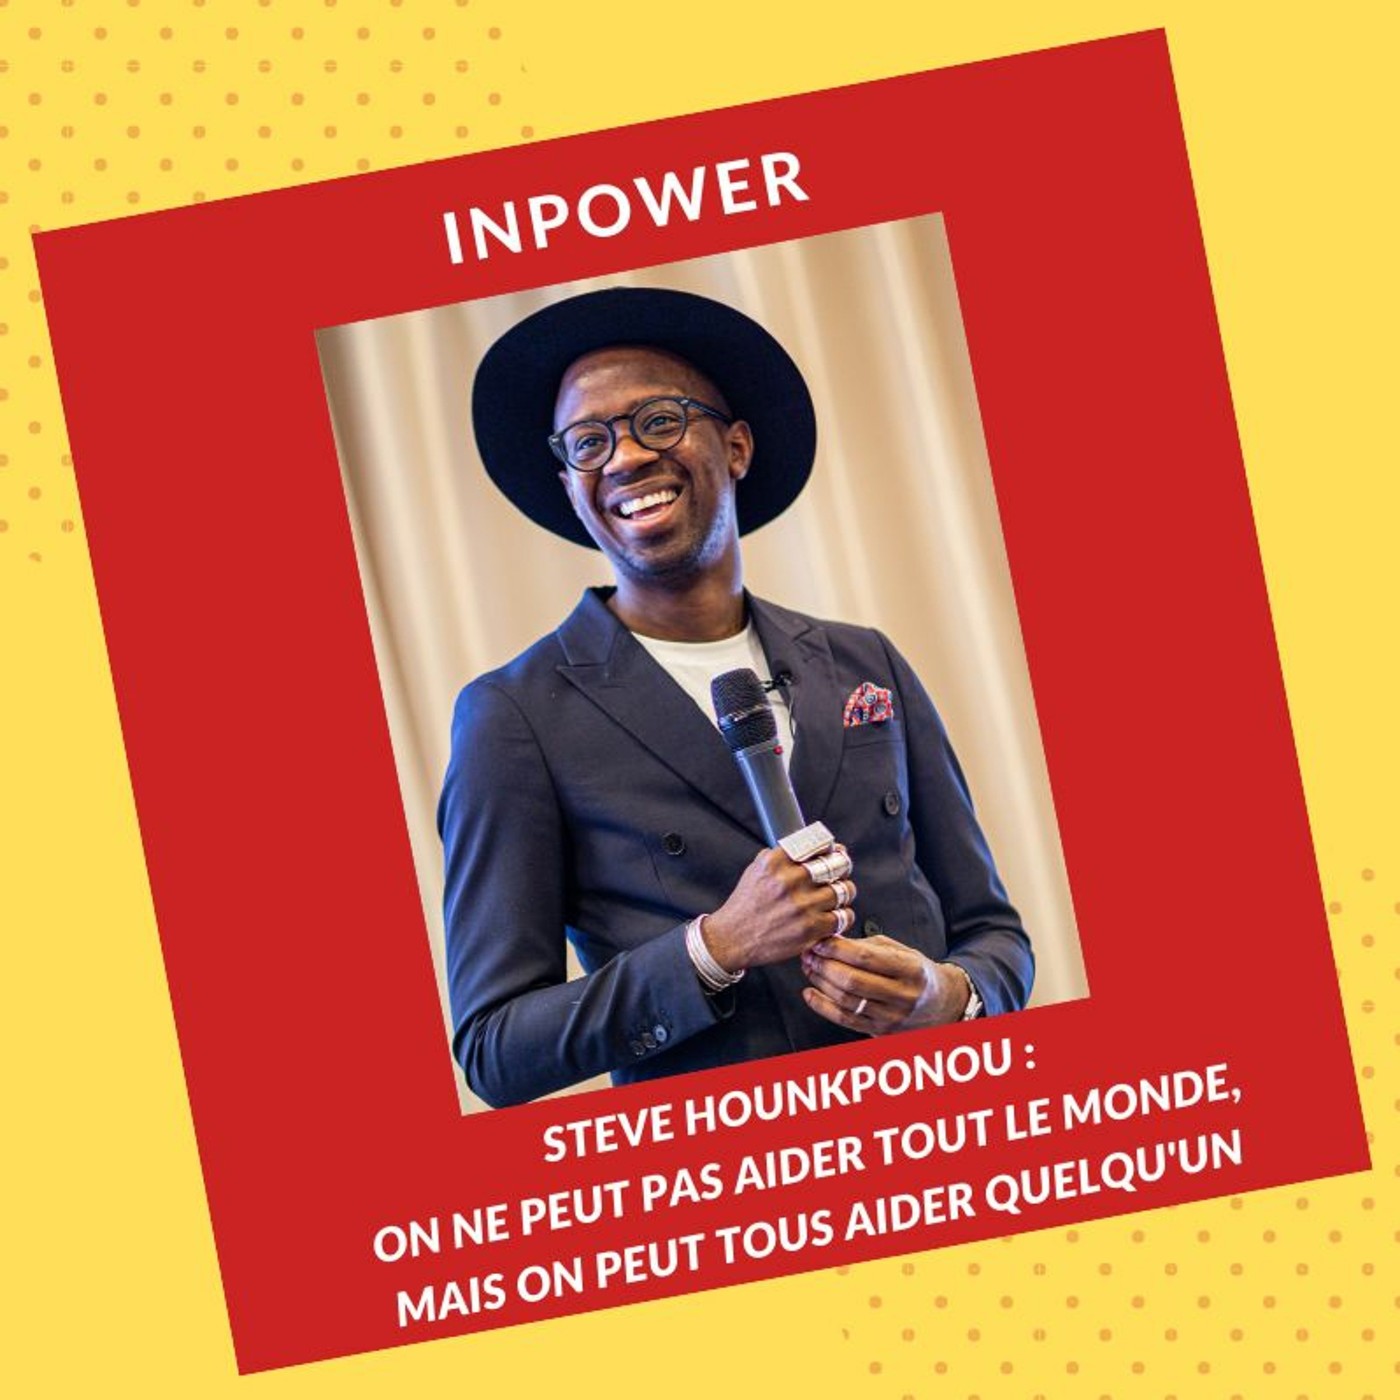 Steve Hounkponou - On ne peut pas aider tout le monde, mais tout le monde peut aider quelqu'un